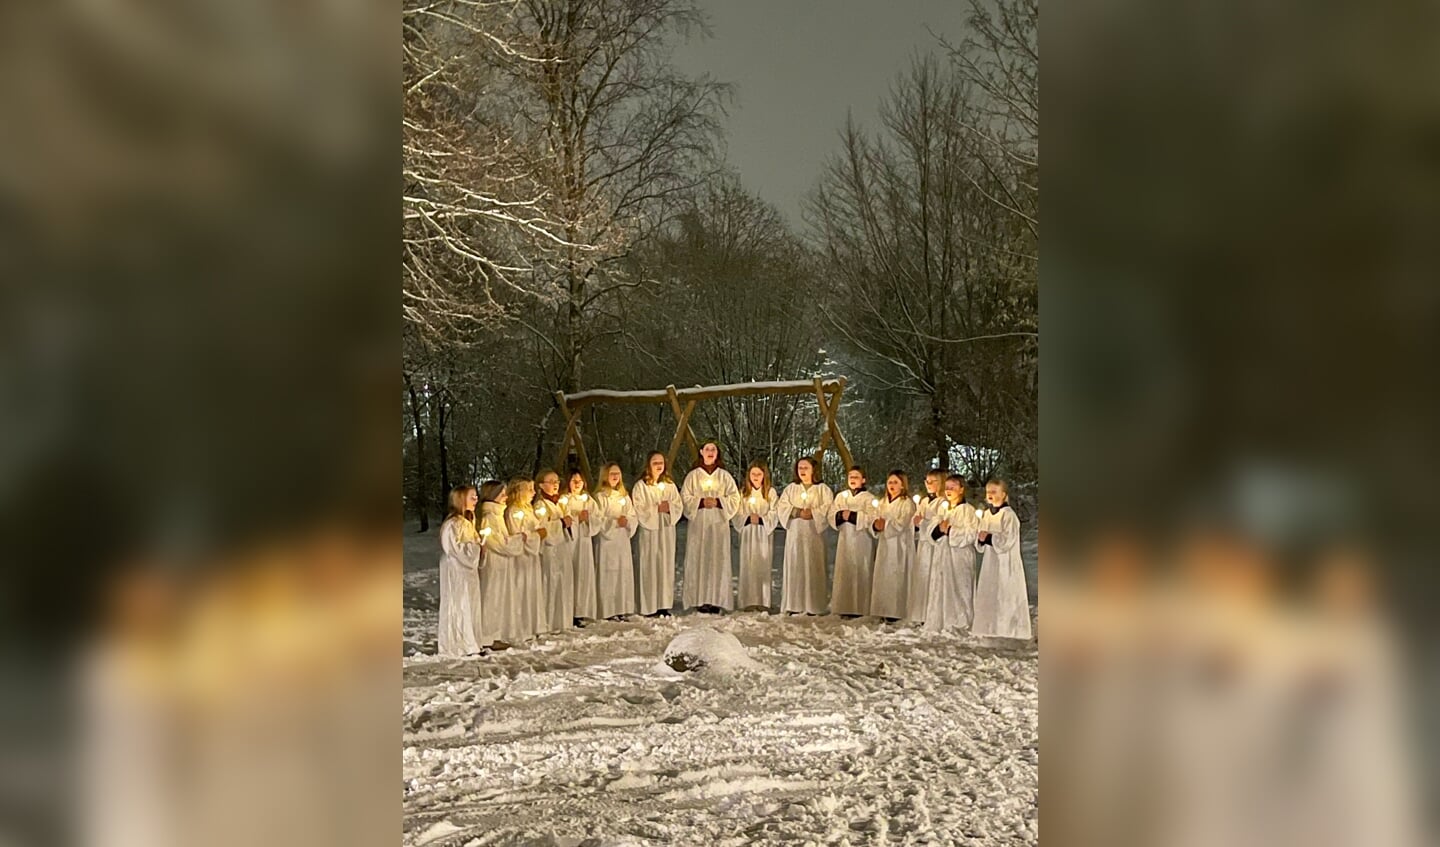 Kulissen for luciapigernes sang kunne næsten ikke være bedre, da de danske i Skovlund-Valsbøl-området åbnede låge nr. 13 i den levende julekalender. 